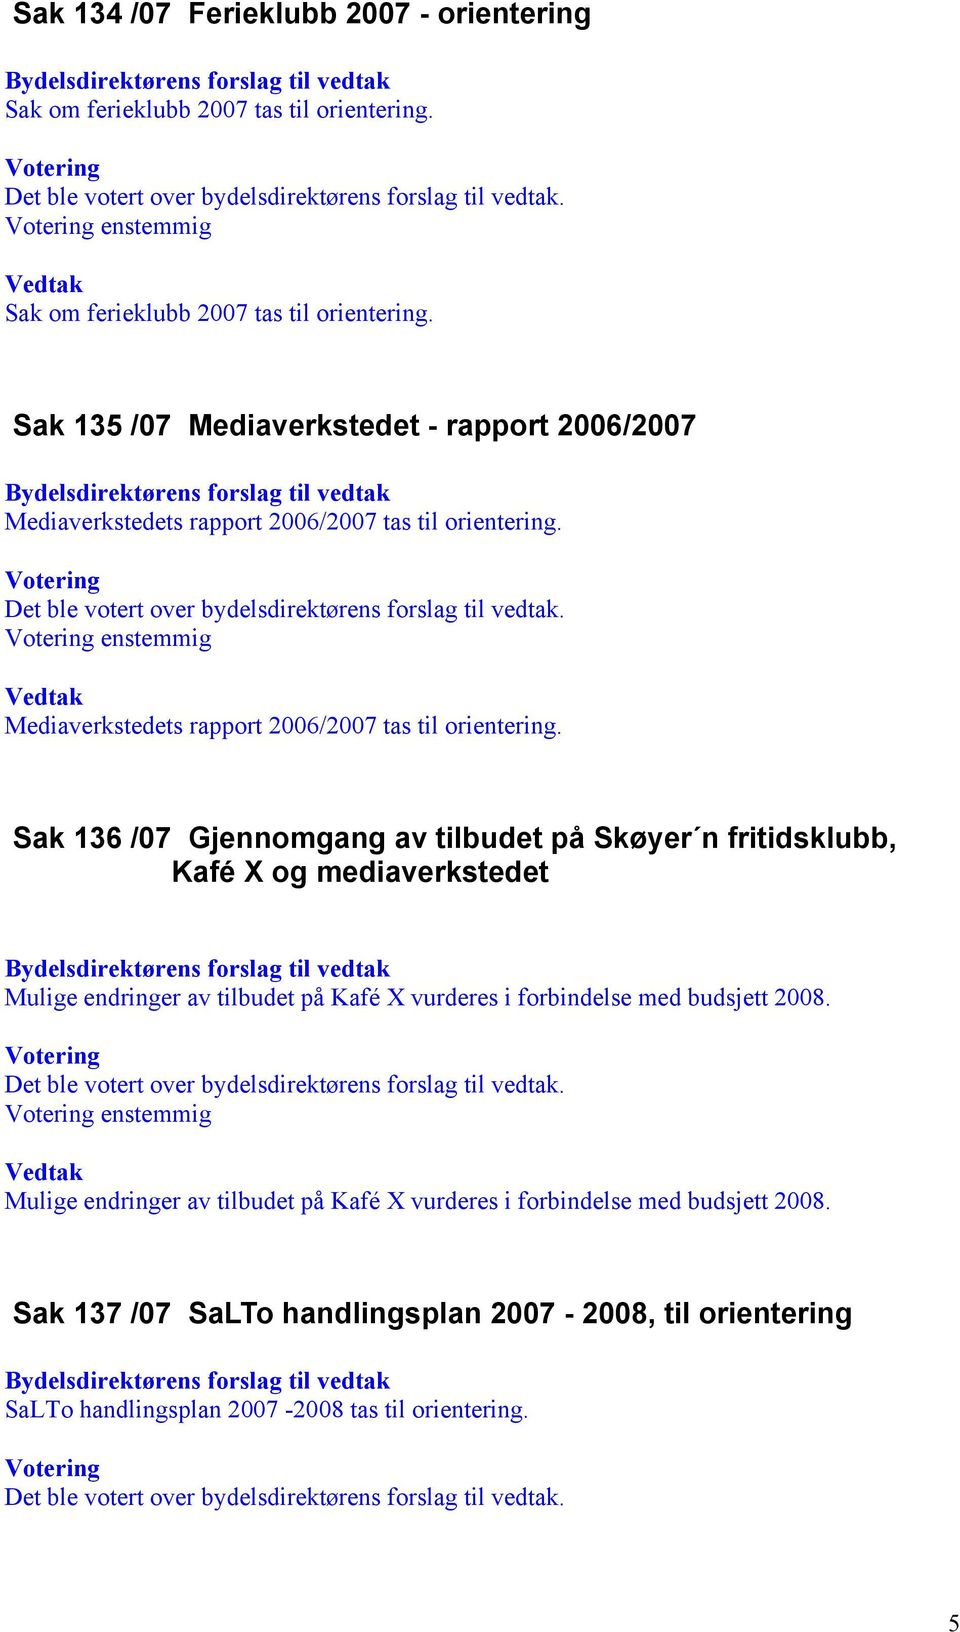 Sak 136 /07 Gjennomgang av tilbudet på Skøyer n fritidsklubb, Kafé X og mediaverkstedet Mulige endringer av tilbudet på Kafé X vurderes i forbindelse med budsjett 2008.